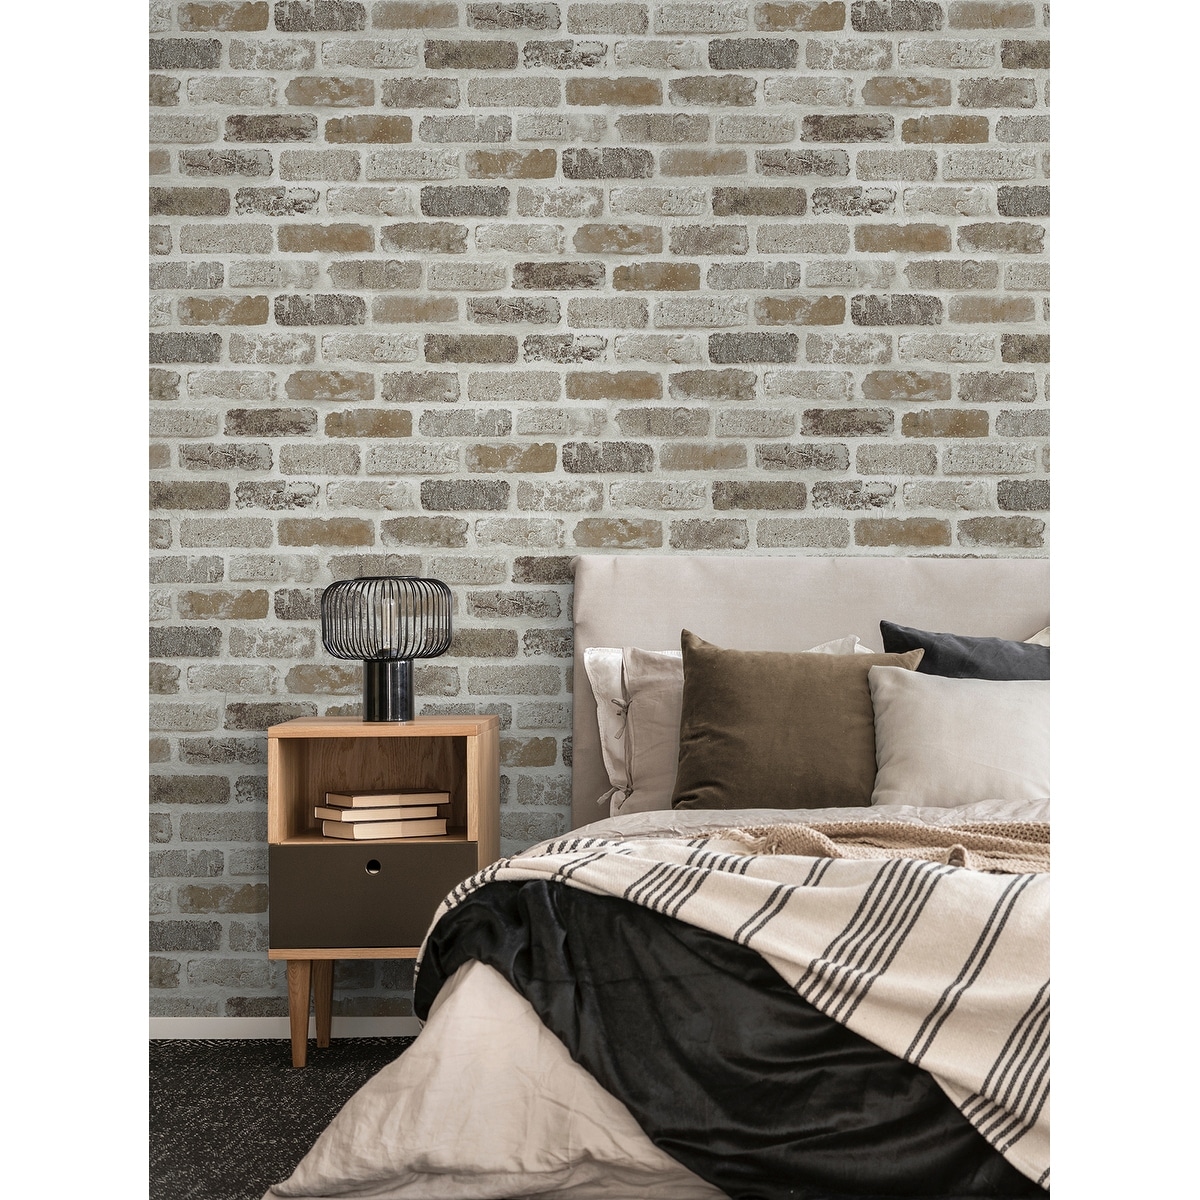 Jaamso royals Grey Brick Peel and Stick self adhesive wallpaper  JAAMSO  ROYALS